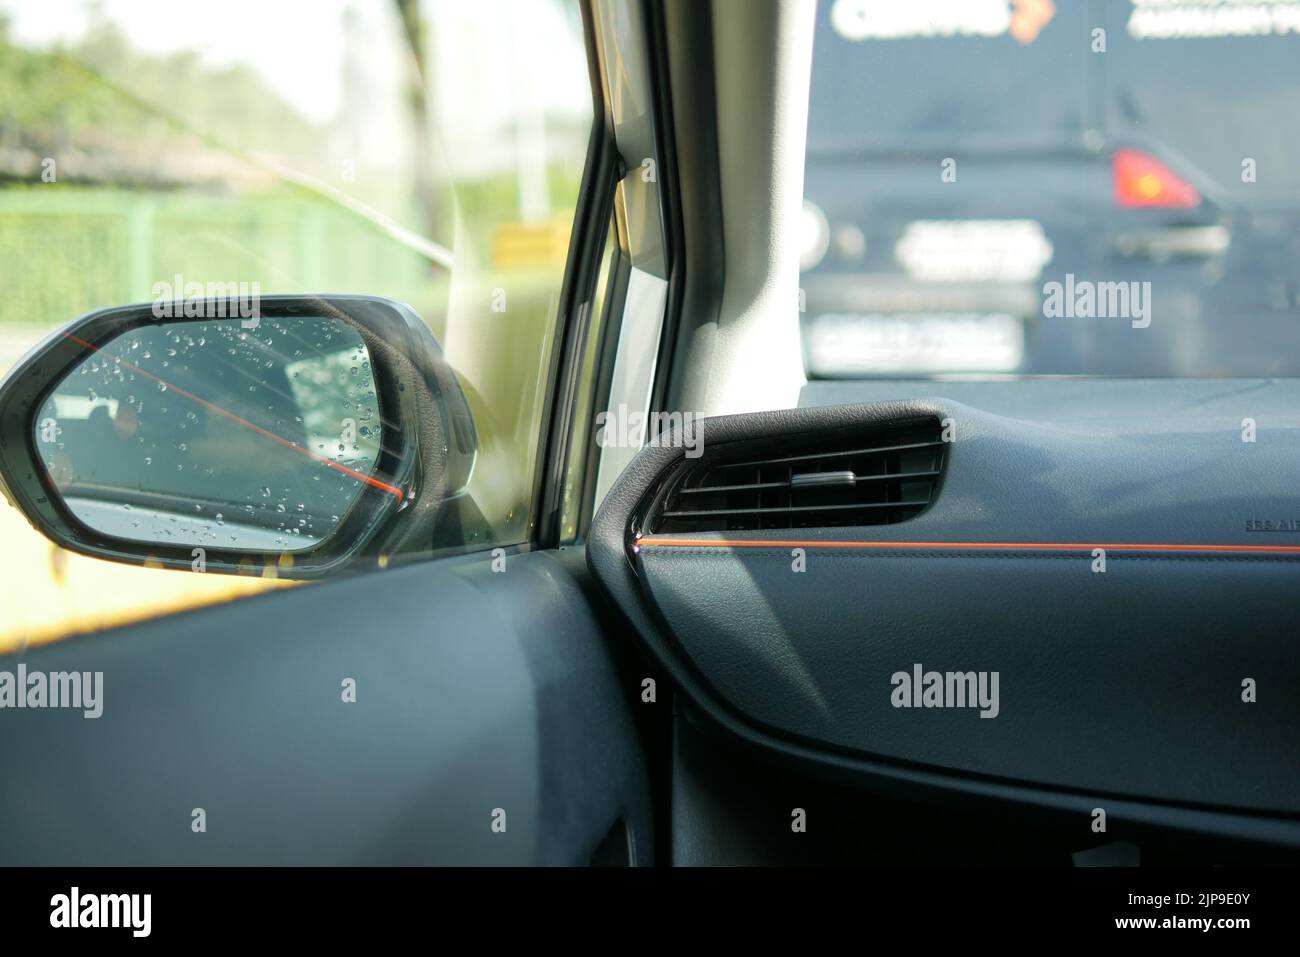 Netzscheibe der Klimaanlage im Auto Stockfotografie - Alamy